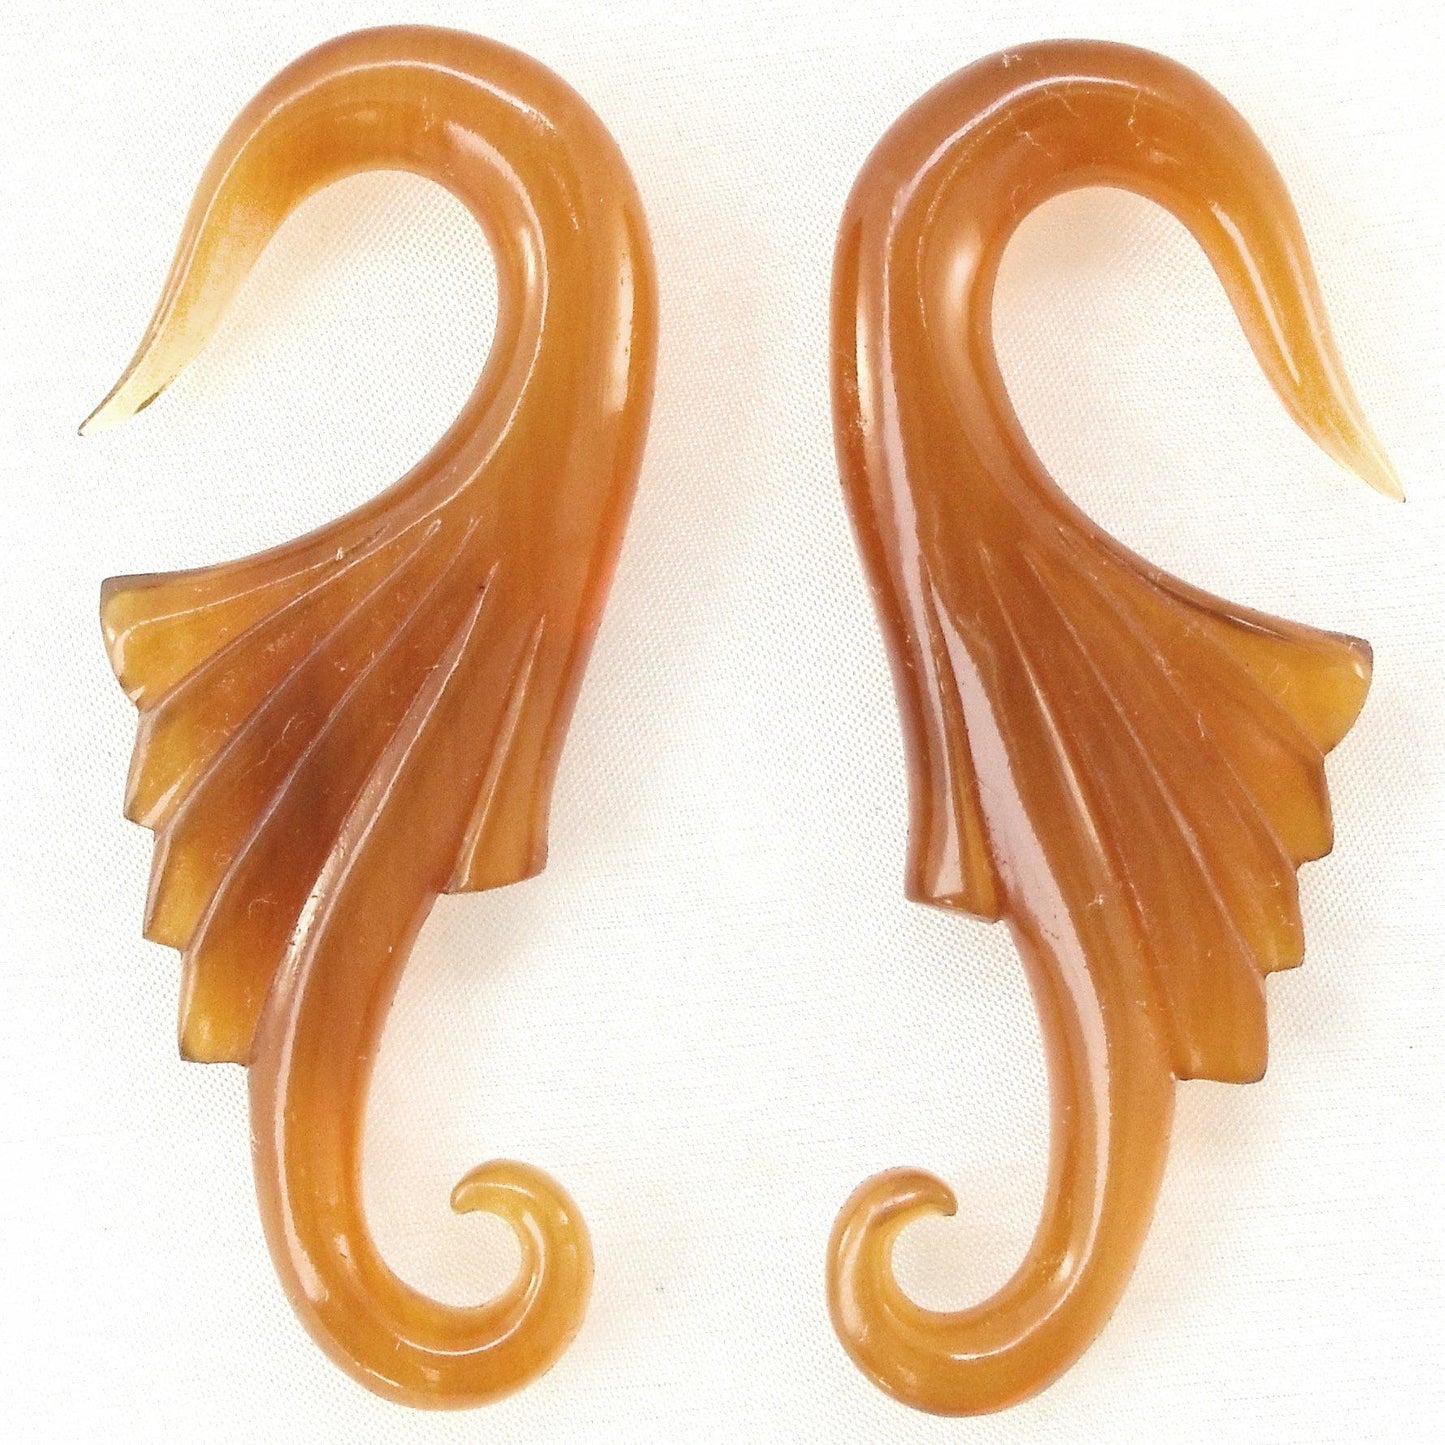 Gauges :|: Neuvo Wings, 2 gauge, Amber Horn. 7/8 inch W X 2 1/4 inch L. | 2 Gauge Earrings